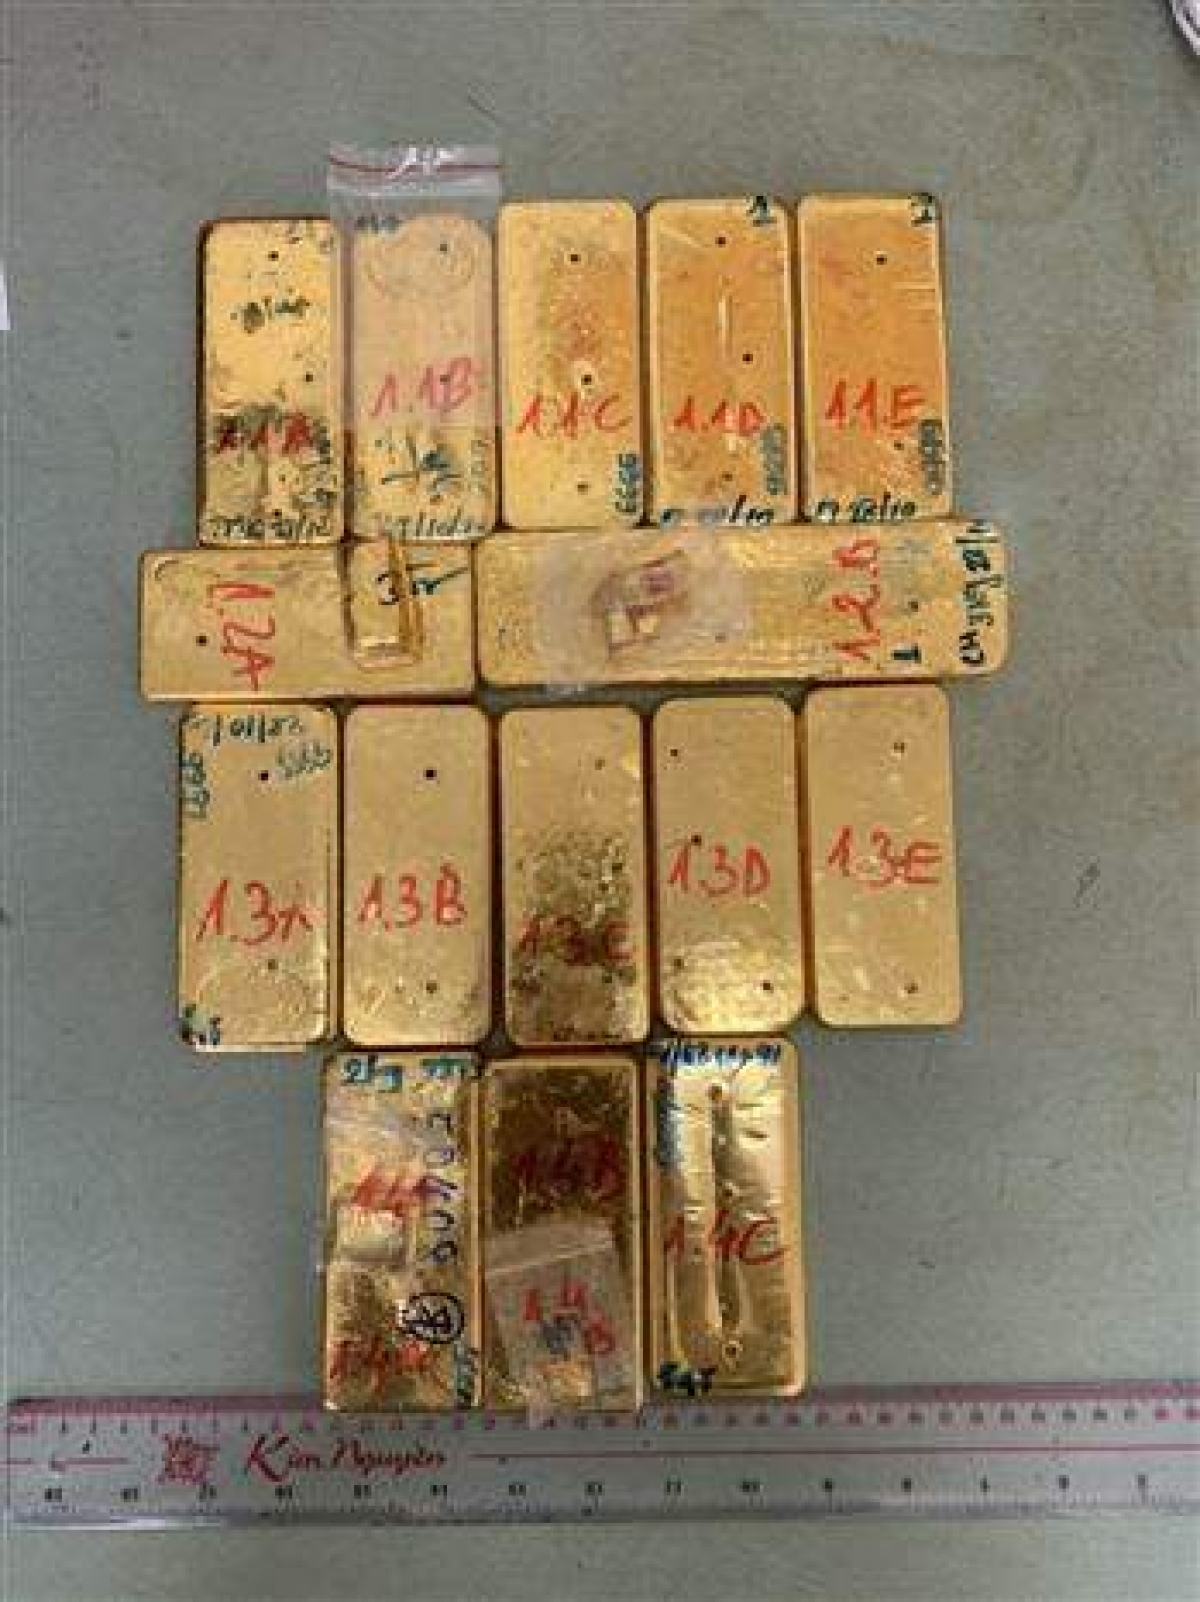 Theo kết quả giám định của Viện khoa học hình sự Bộ Công an, 51 kg kim loại màu vàng vận chuyển trái phép qua biên giới bị Công an tỉnh An Giang bắt giữ vào ngày 30/10/2020 là vàng 9999 không lẫn tạp chất.